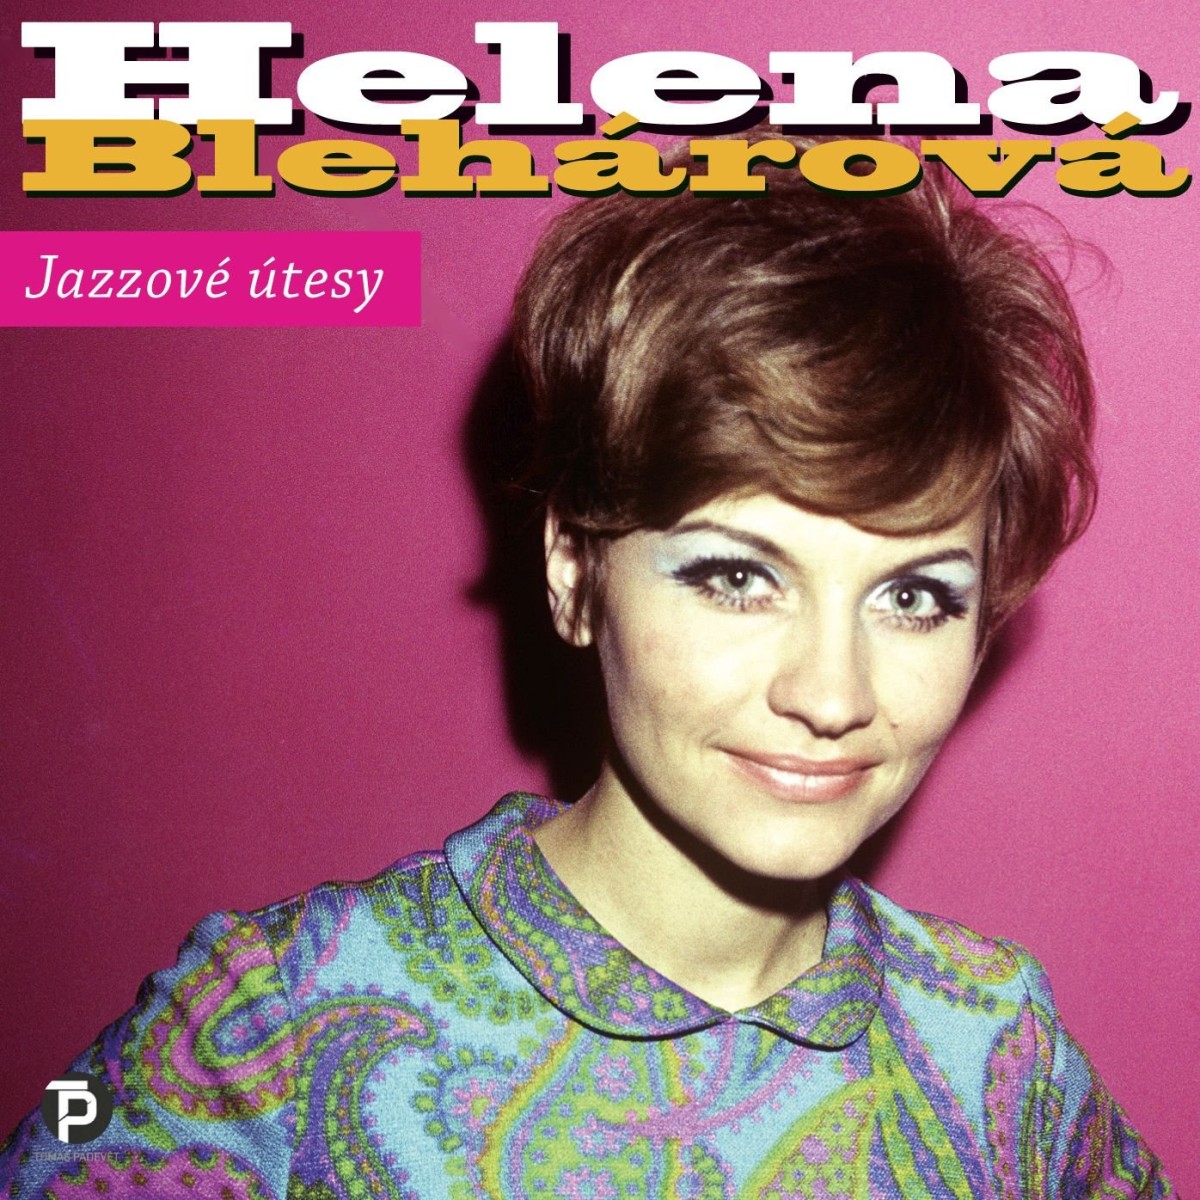 CD Shop - BLEHAROVA HELENA JAZZOVE UTESY (1963-1990)